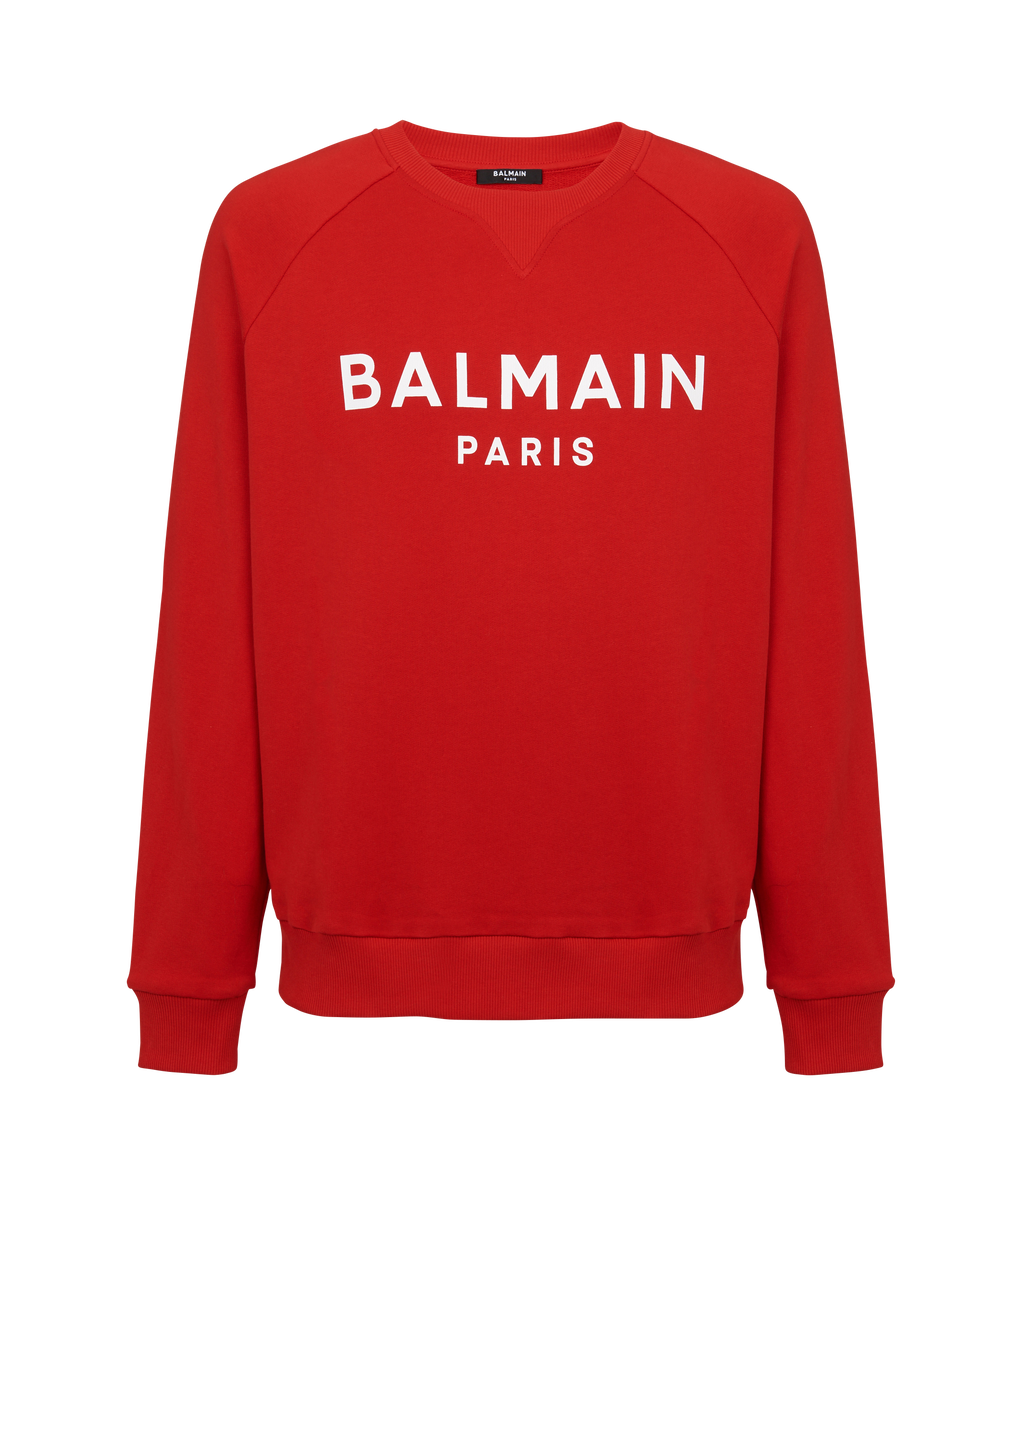 Cotton sweatshirt with flocked Balmain Paris logo, red, hi-res